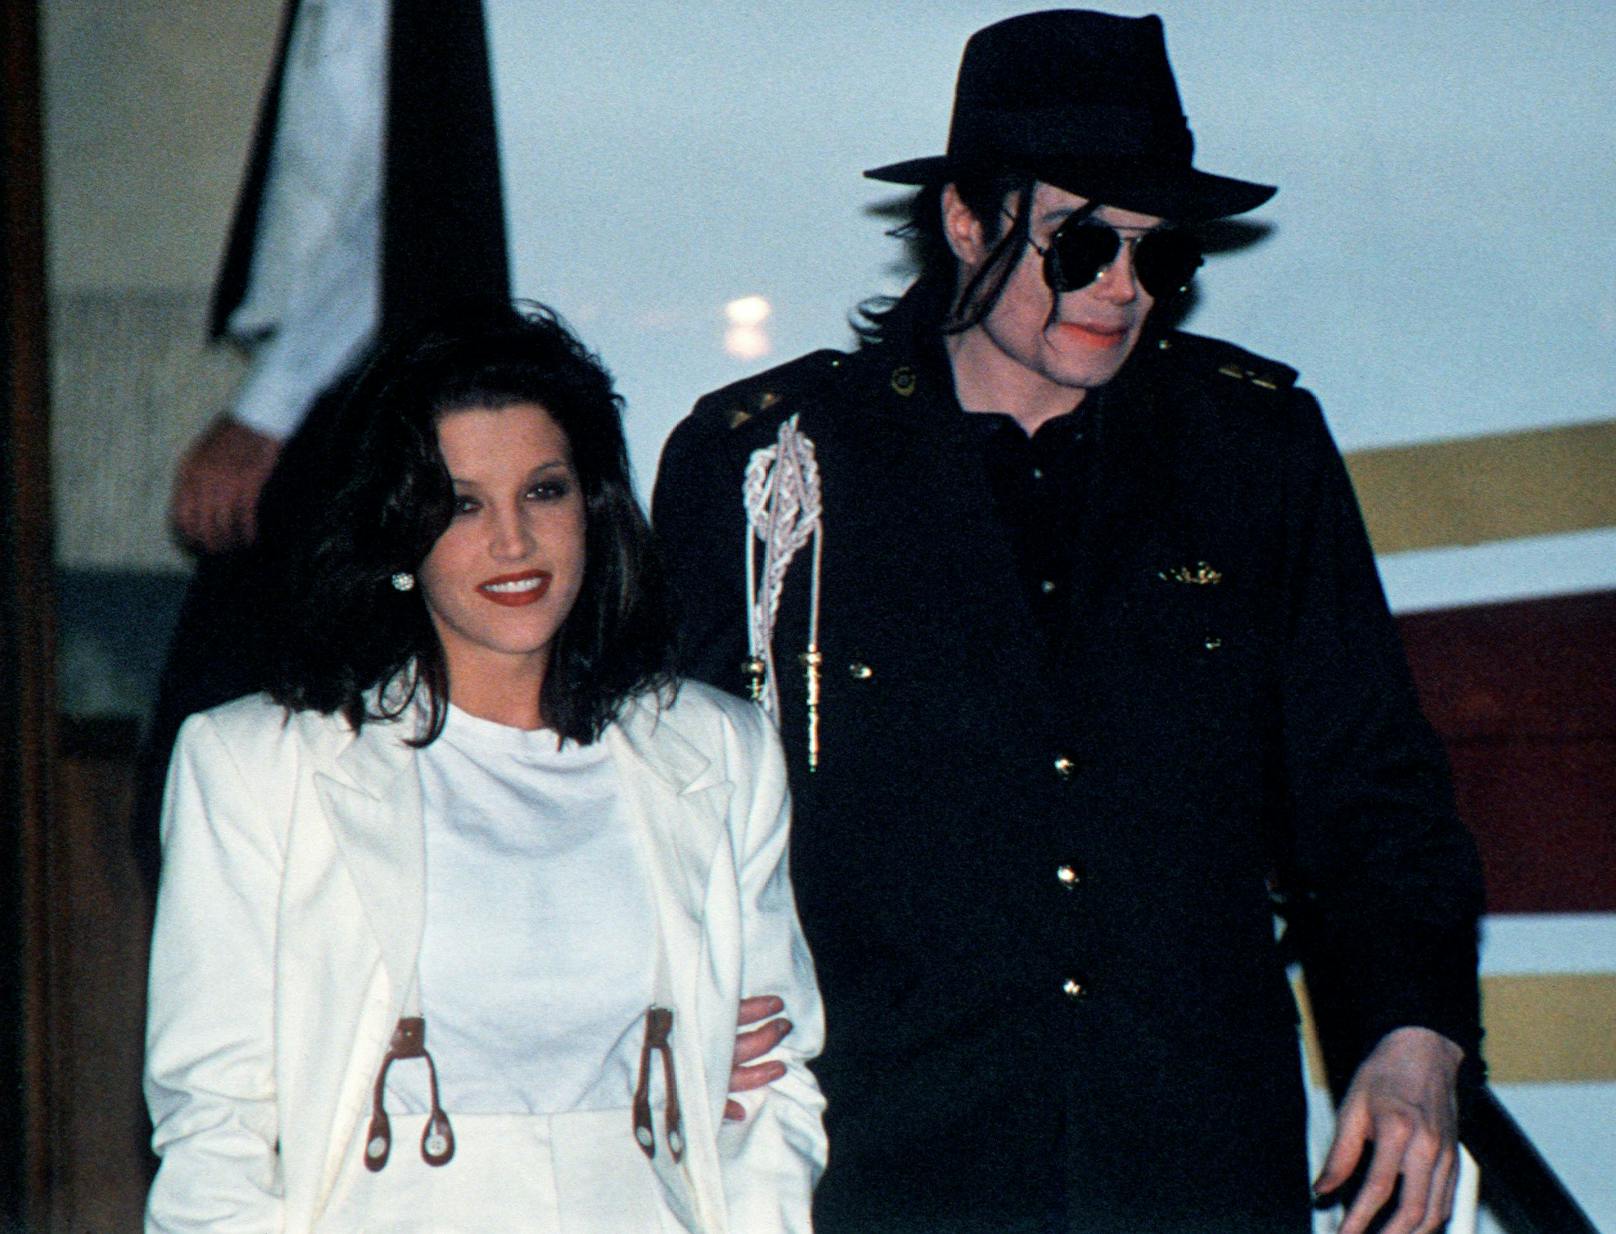 Auch das Privatleben von Michael Jackson wurde stets heiß diskutiert. Michael Jackson war zweimal verheiratet. Seine erste Ehe war mit Lisa Marie Presley, der Tochter von Elvis Presley, von 1994 bis 1996. Die Ehe endete in Scheidung.